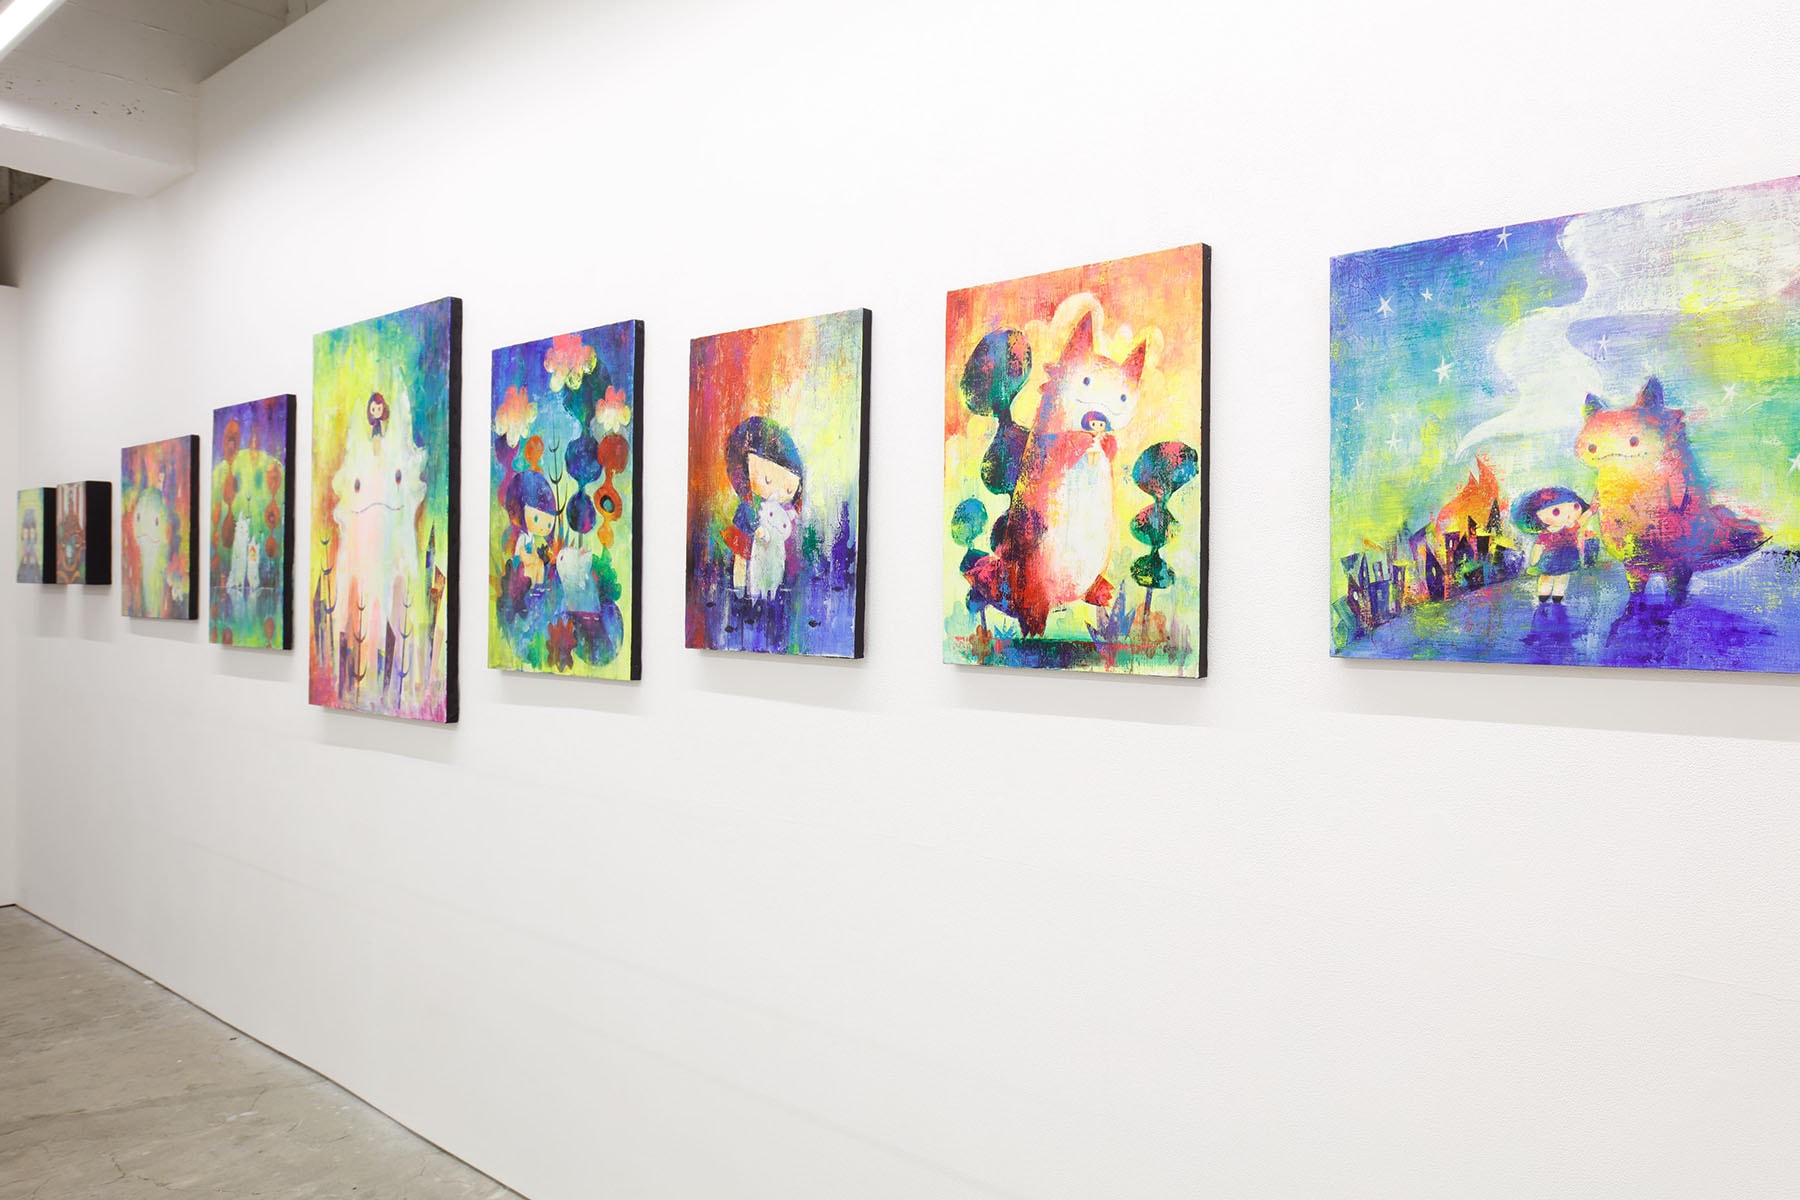 走進日本藝術家 Shoko Nakazawa x T9G 聯合展覽《SxT Zingaro》